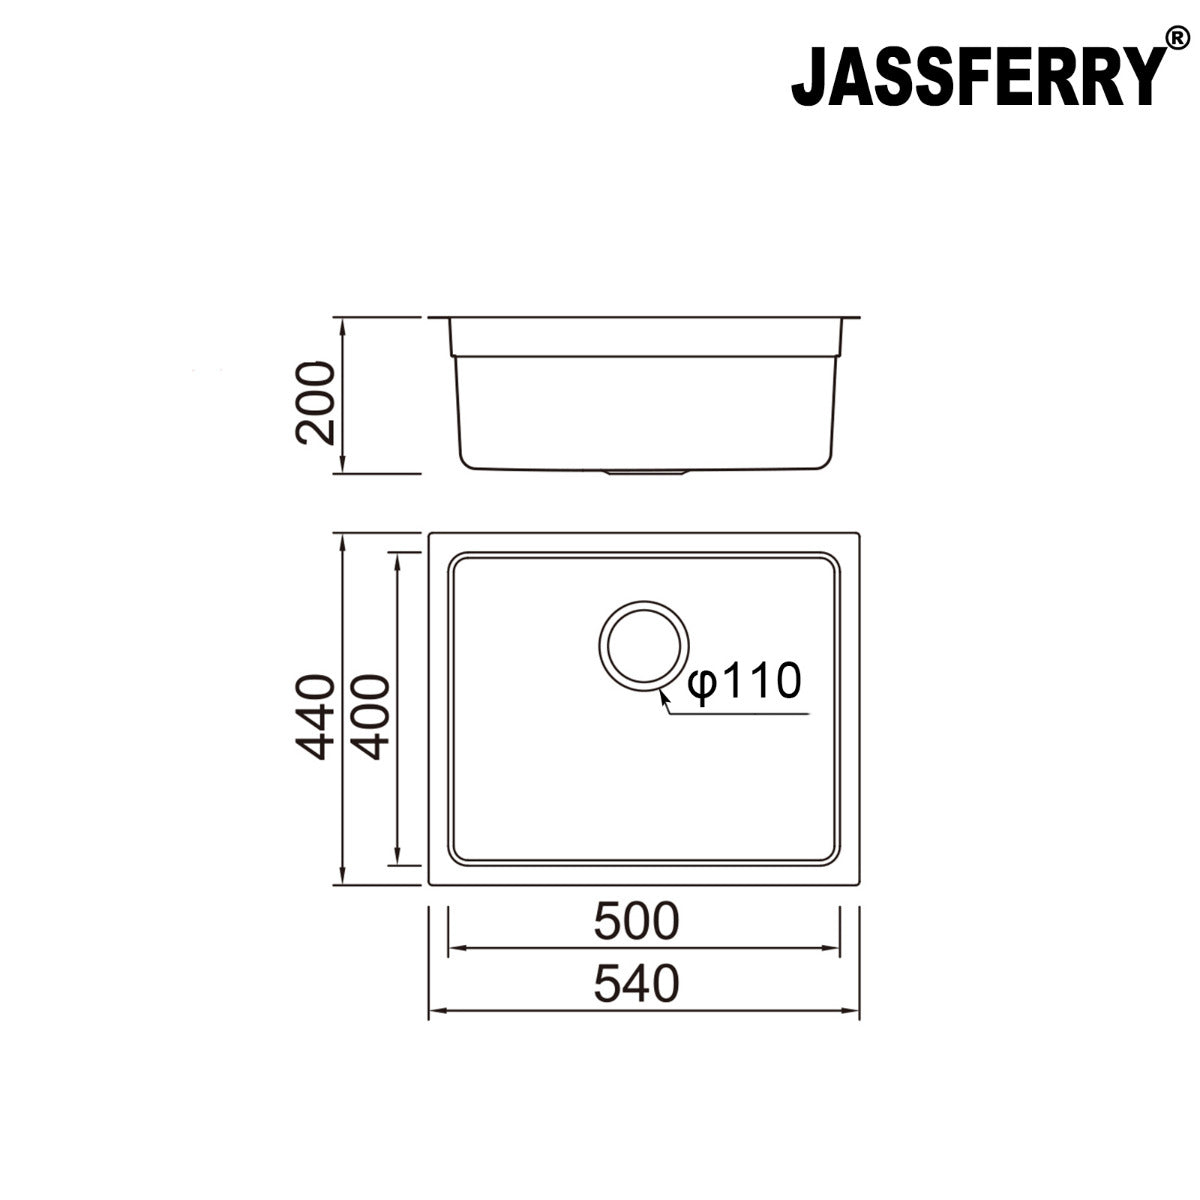 JassferryJASSFERRY Undermount Stainless Steel Kitchen Sink 1 Bowl Dish Drainer Rack - 799Kitchen Sinks